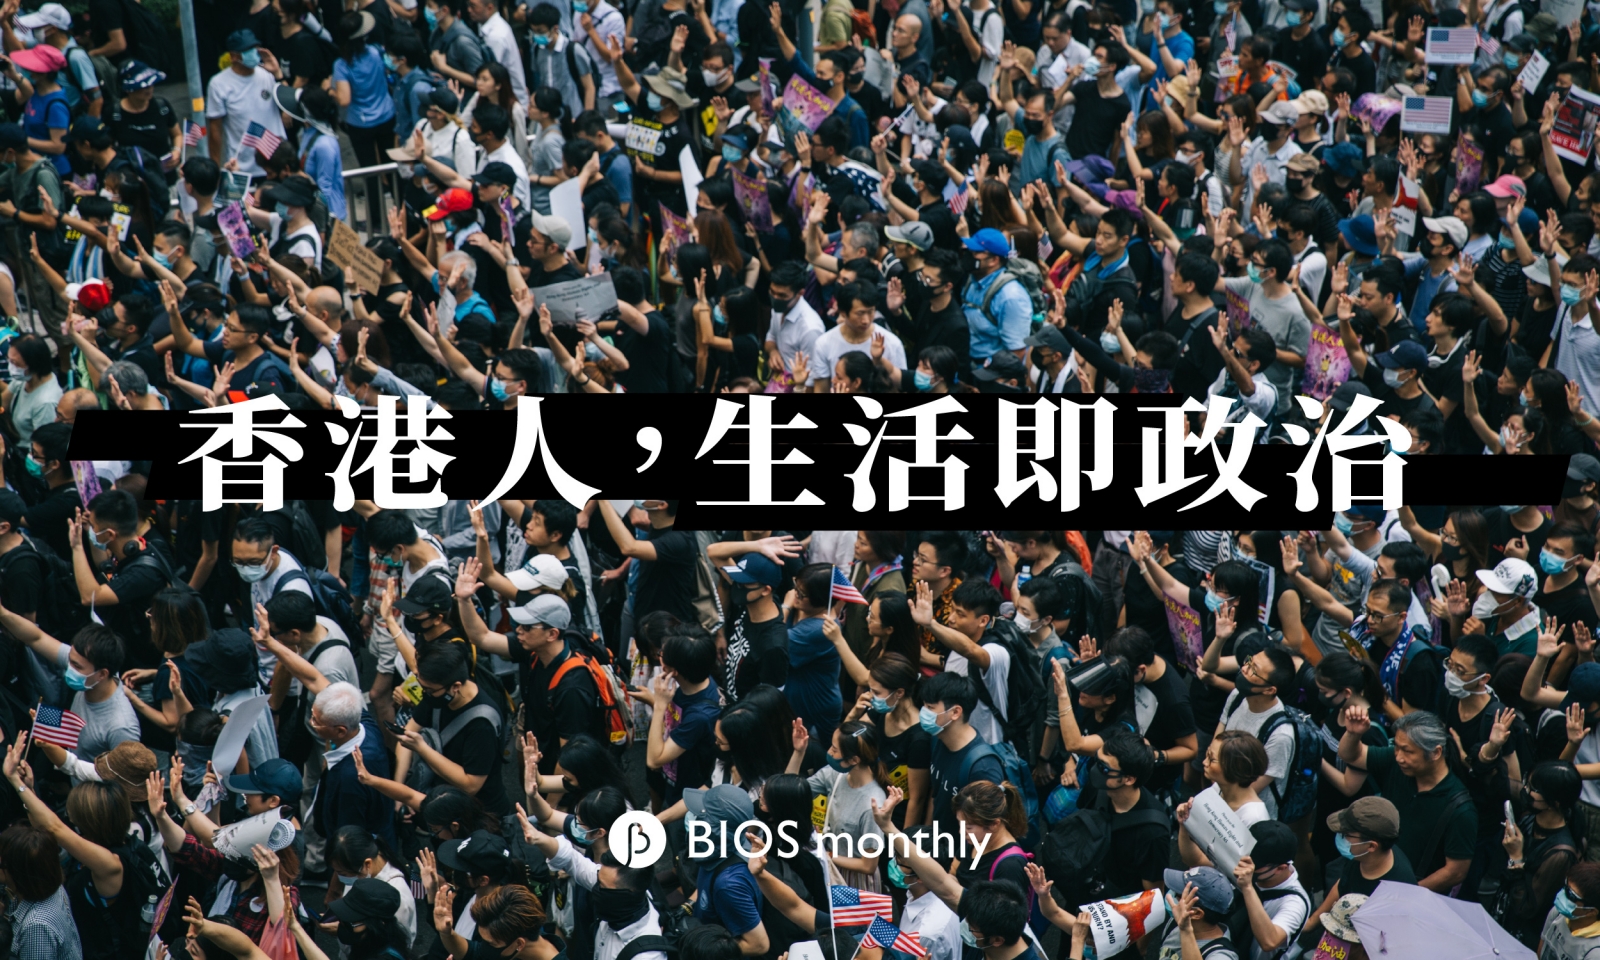 七個香港人── BIOS monthly 抗爭現場街訪